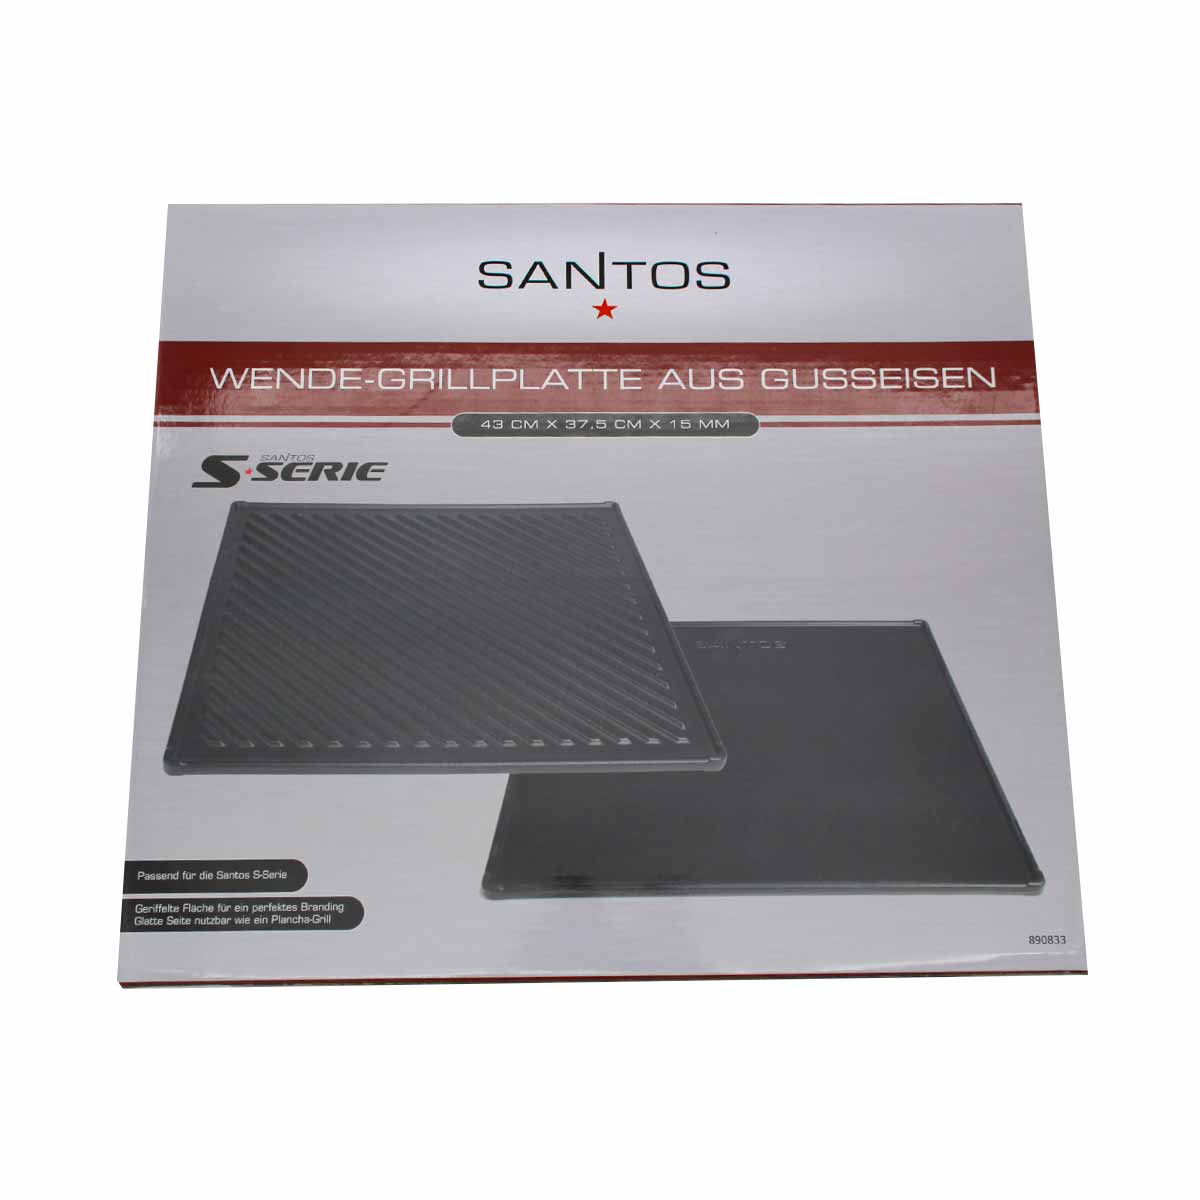 SANTOS Wende-Grillplatte Gusseisen für S-Serie, 43 x 37,5 cm